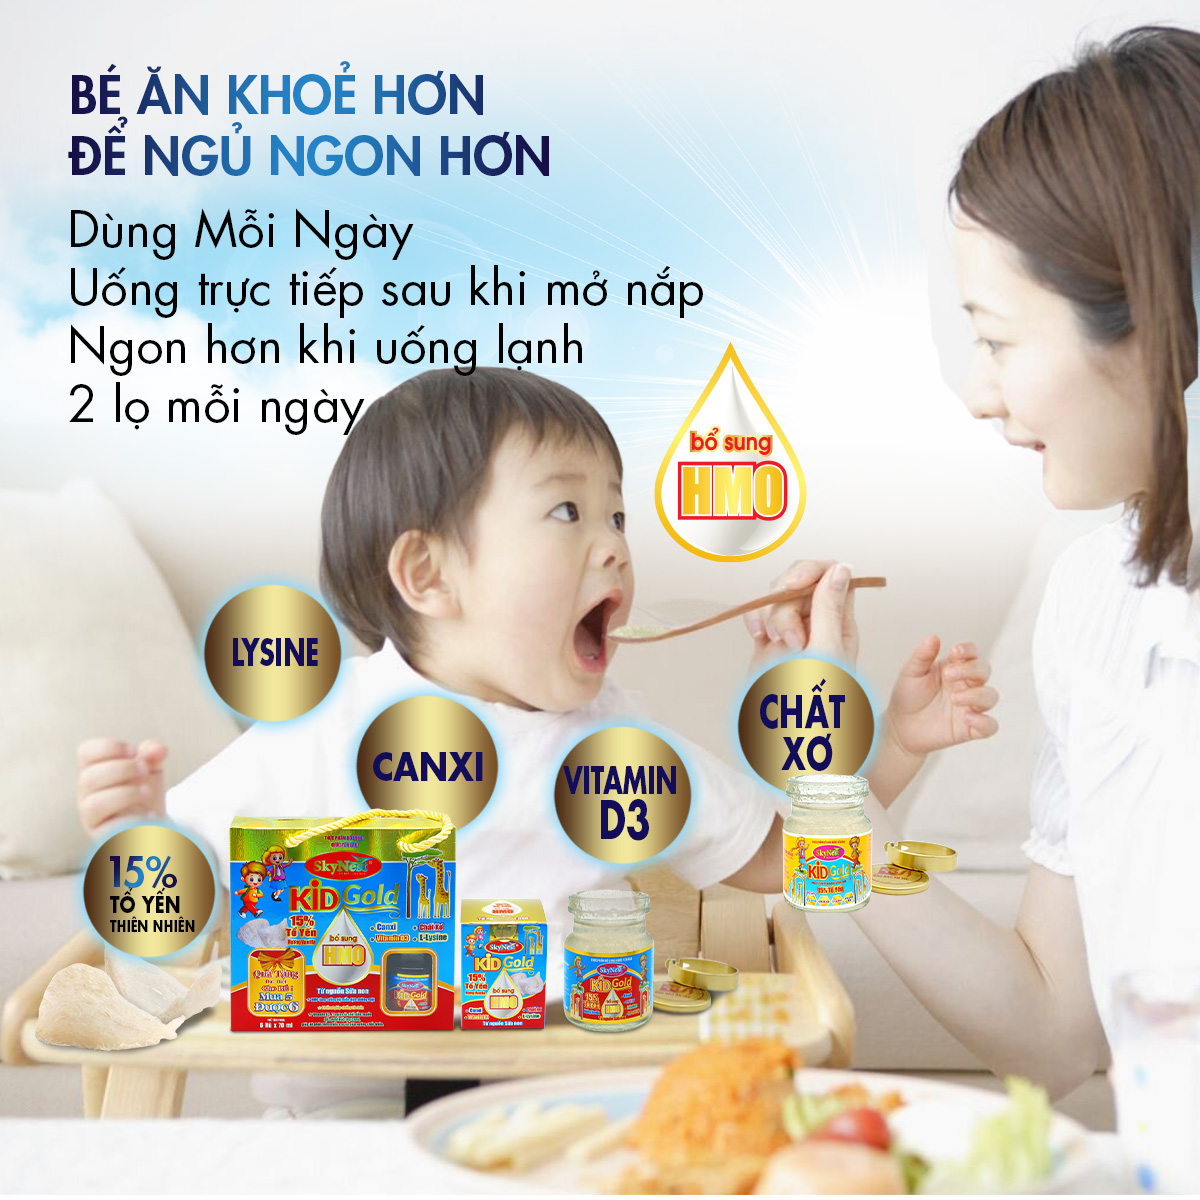 Nước Yến Sào SkyNest Kid Gold HMO 15% Tổ Yến Cho Trẻ Nhỏ x Lọ 70 ml, bổ sung HMO từ nguồn sữa non, kích thích tiêu hóa, lợi khuẩn đường ruột